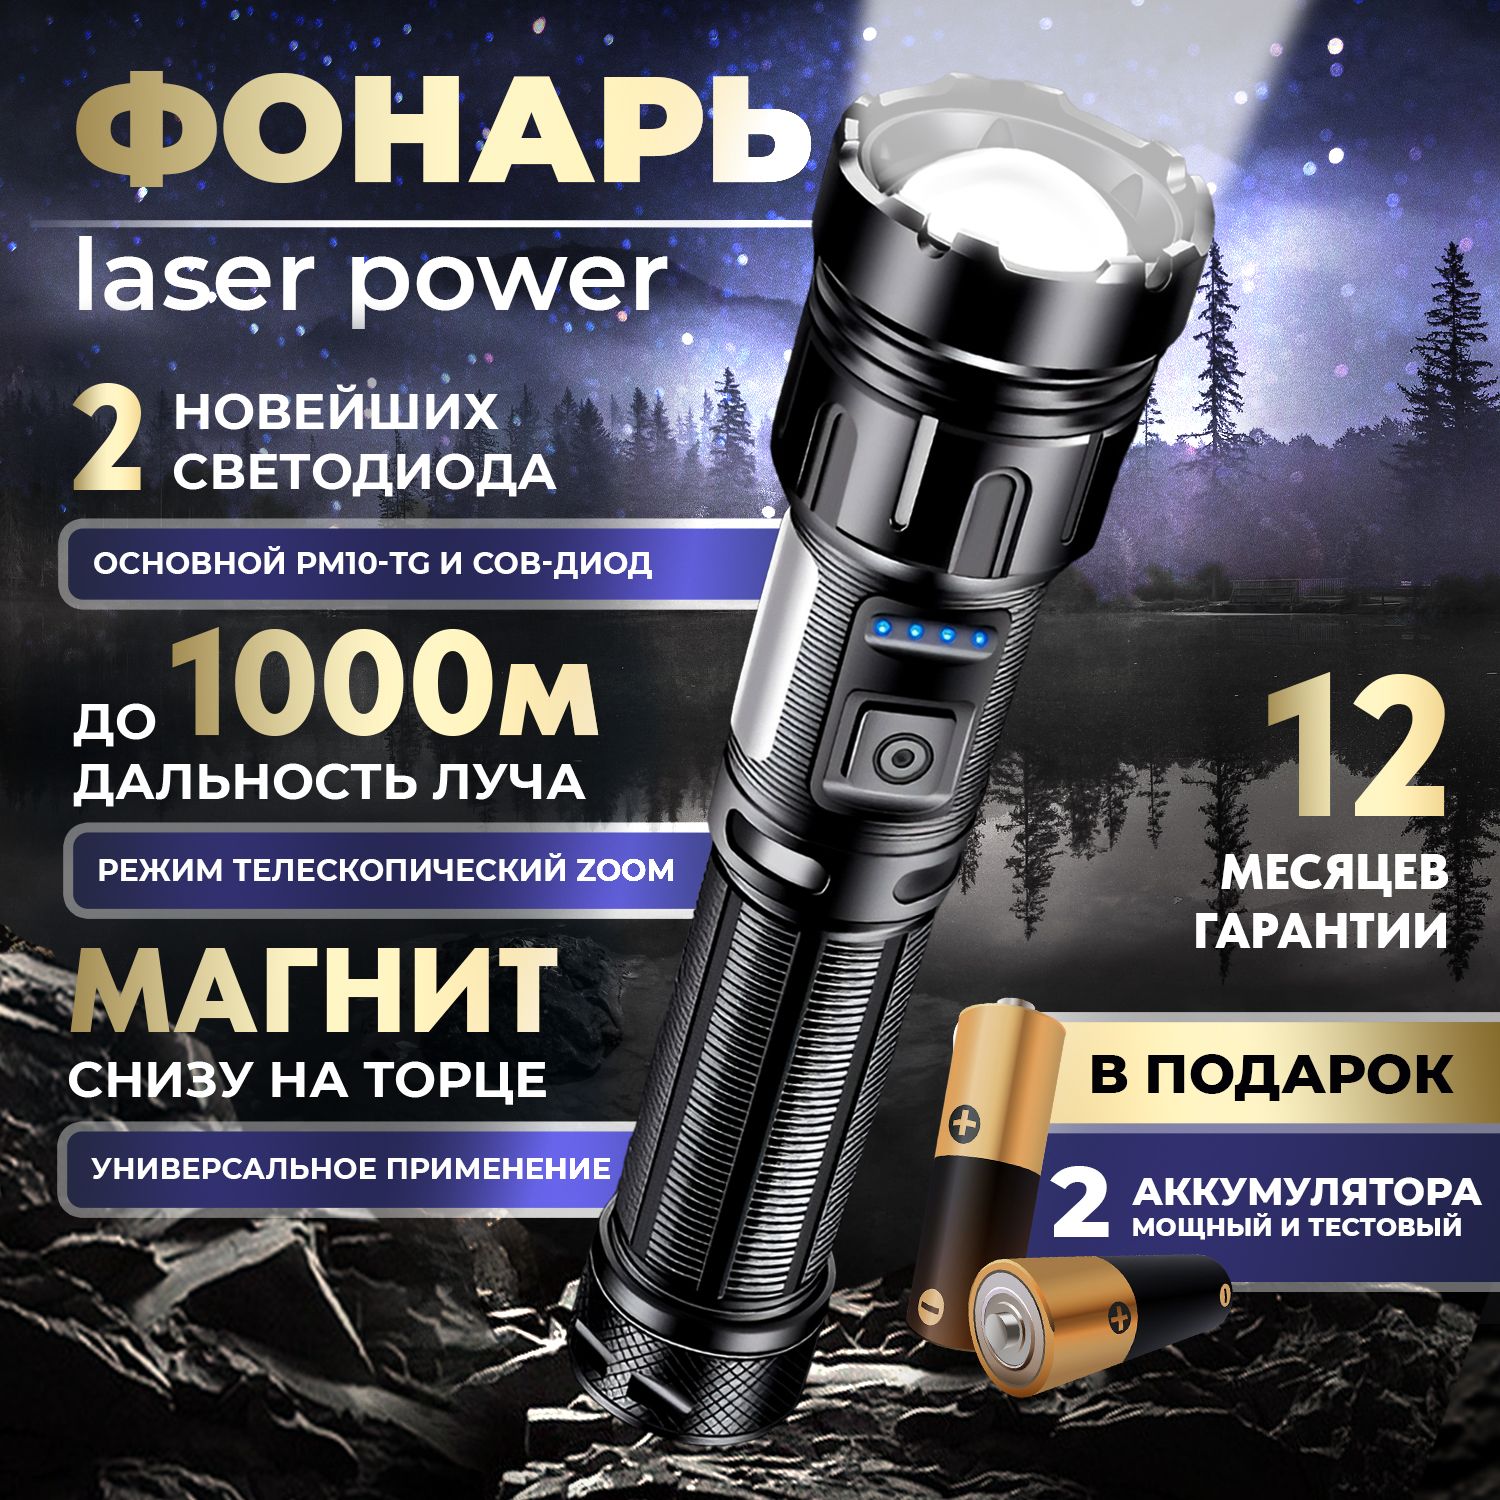 OLX.ua - объявления в Украине - фонарь на аккумуляторе